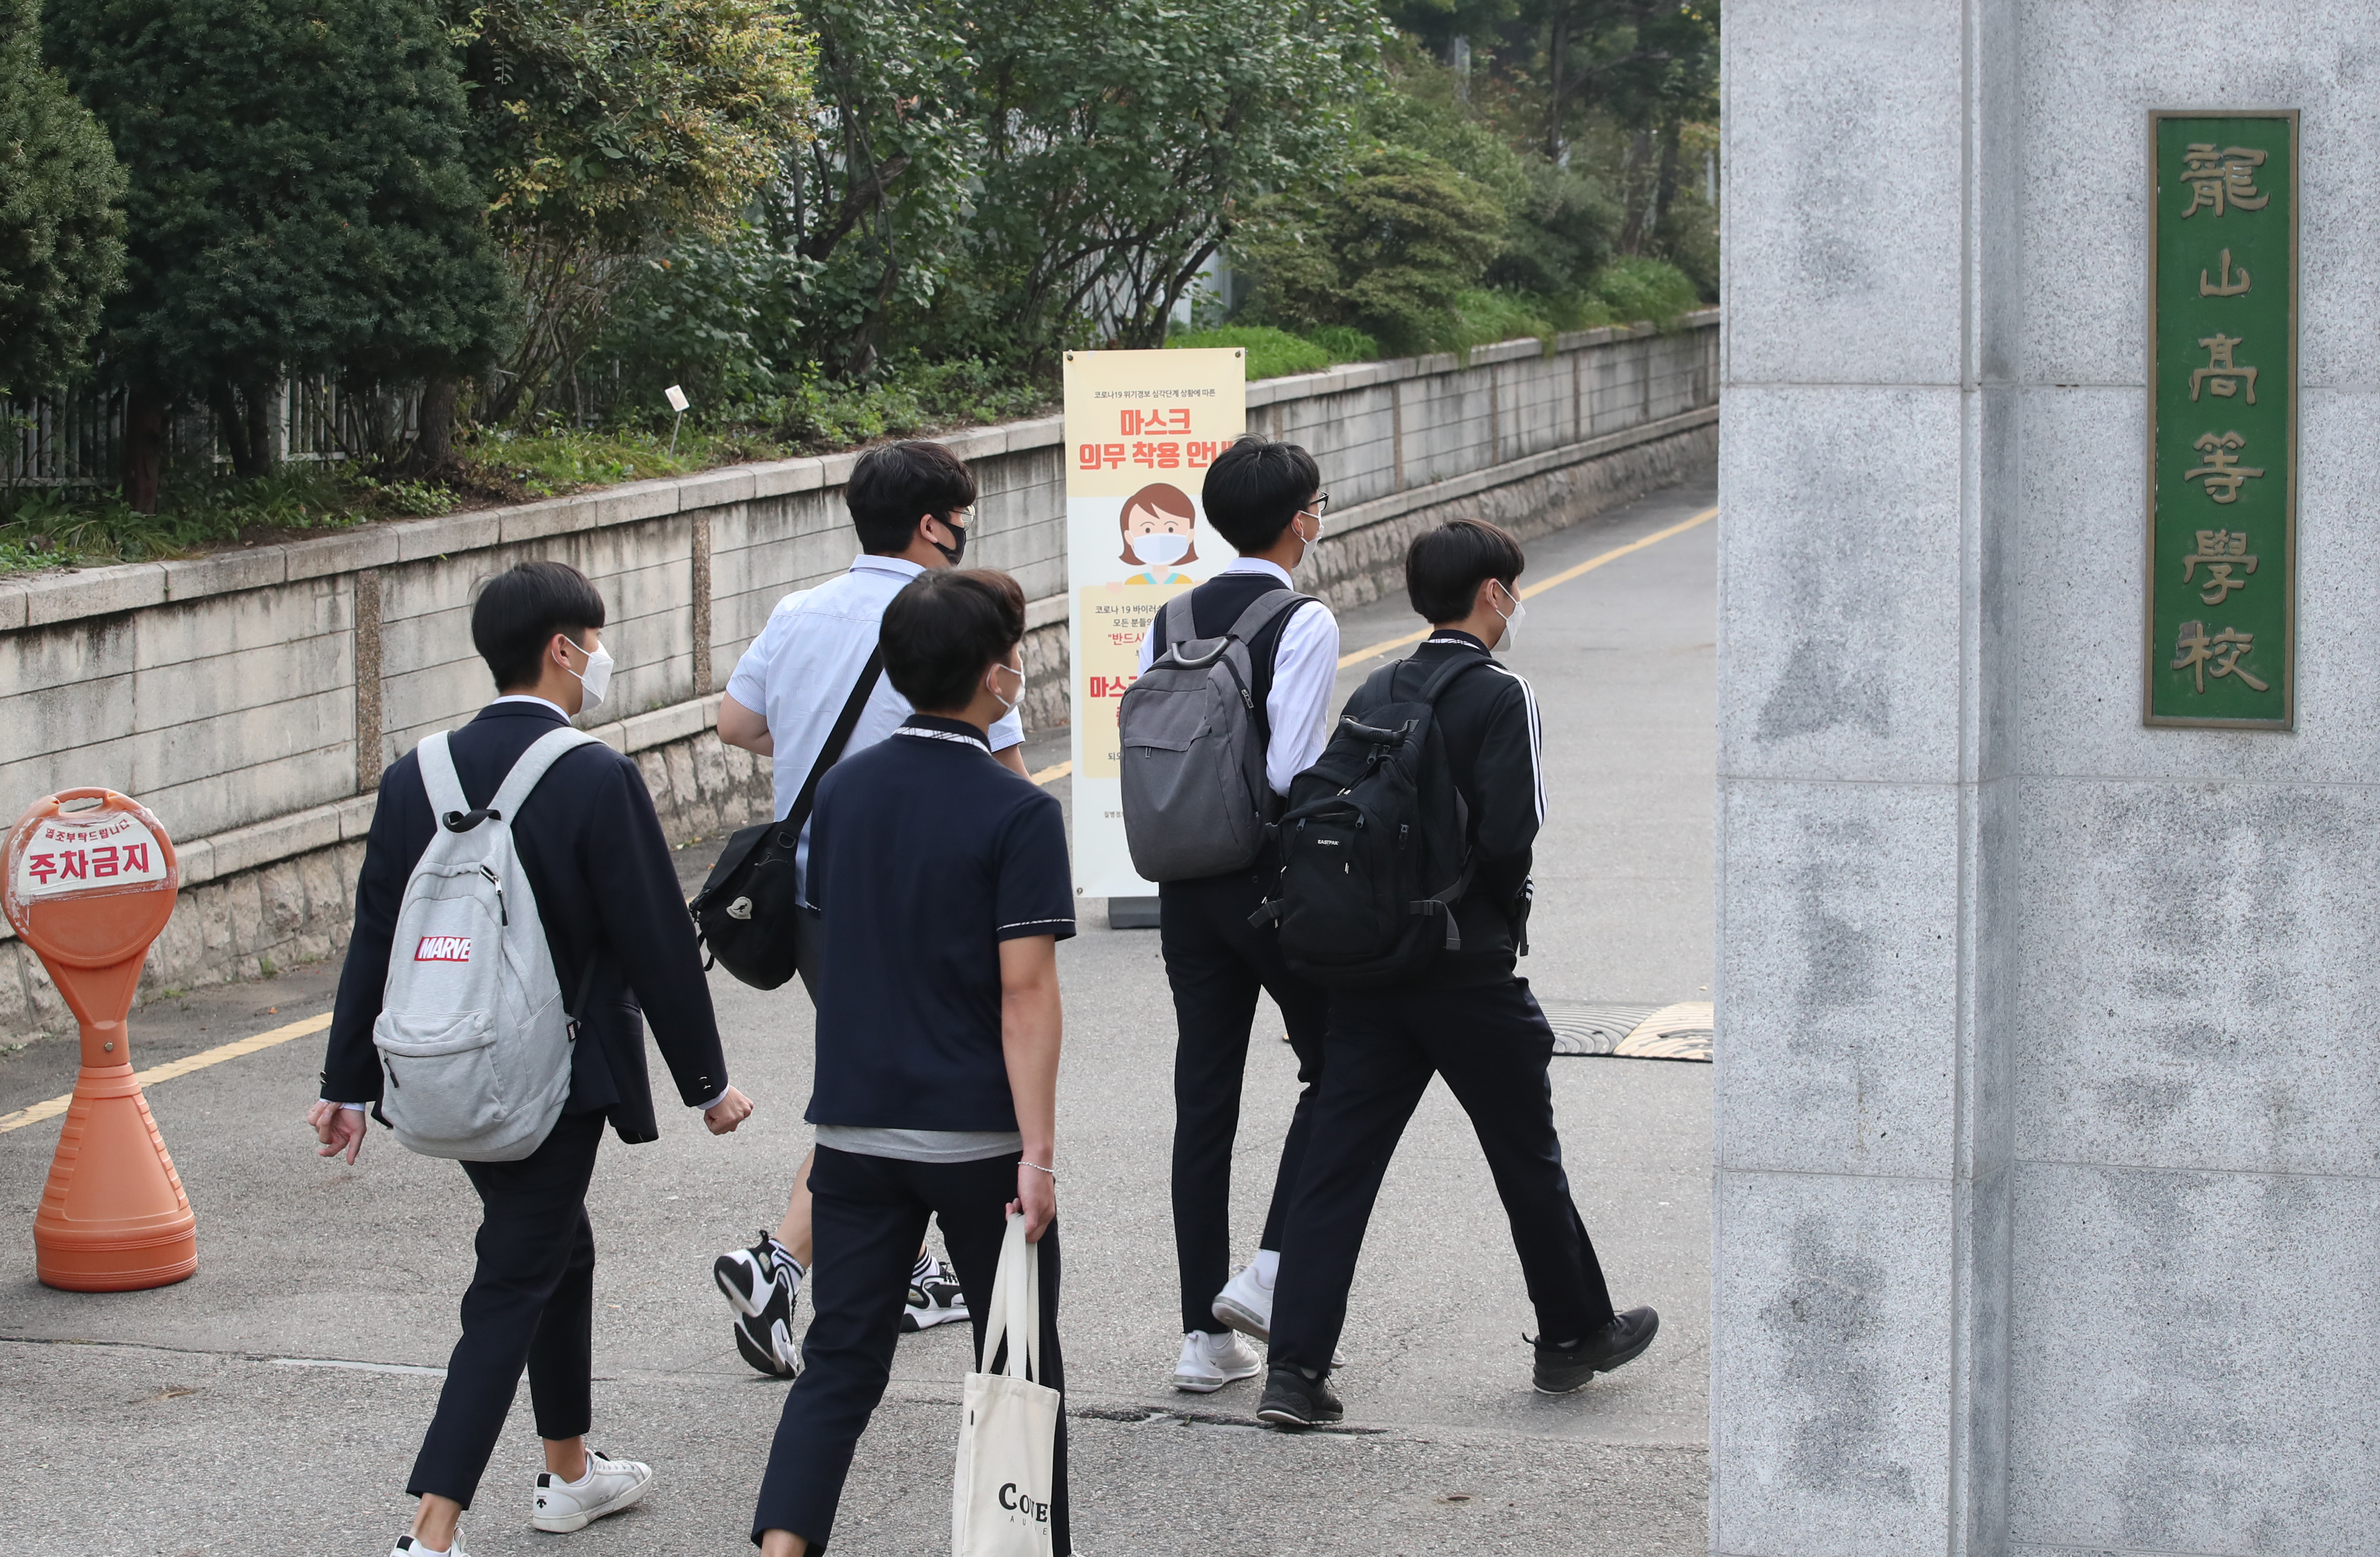 21일 오전 서울 용산구 용산고등학교에서 학생들이 등교하고 있다. 2020.9.21 연합뉴스